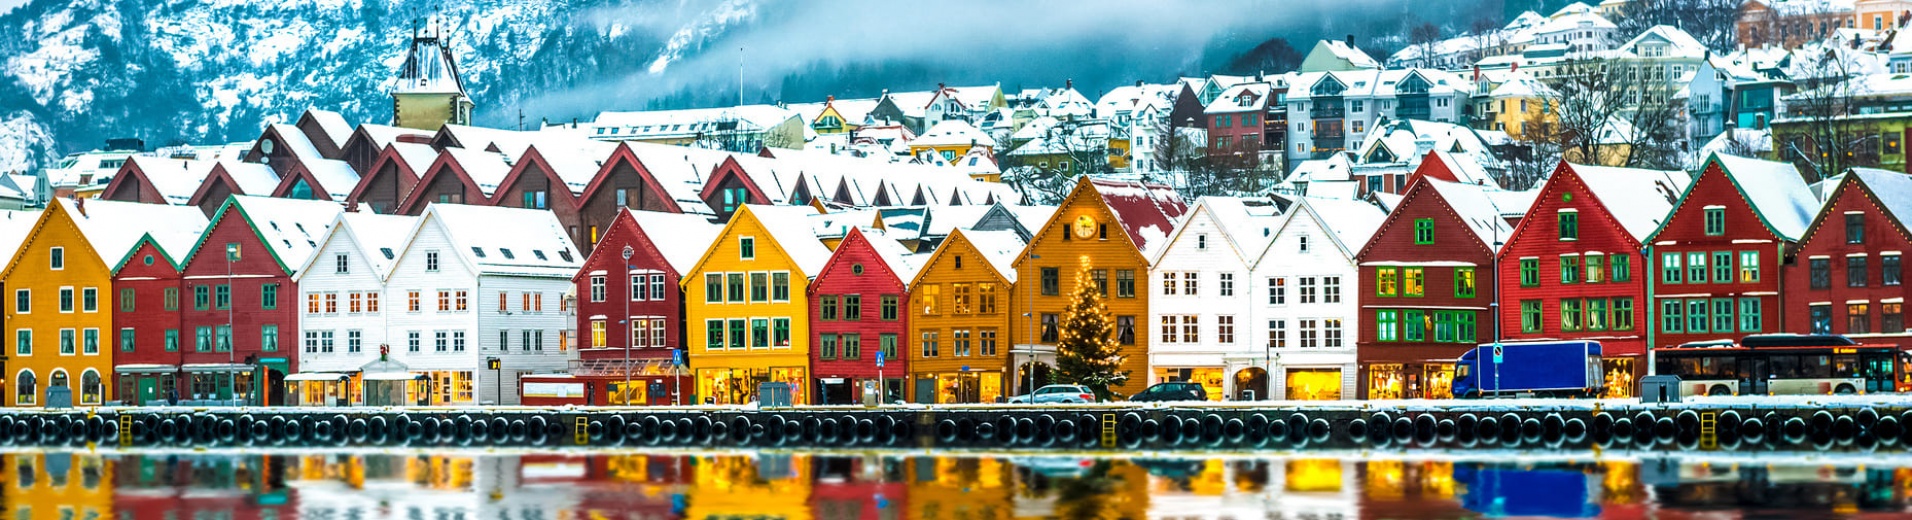 Le quartier de Bryggen à Bergen sous la neige